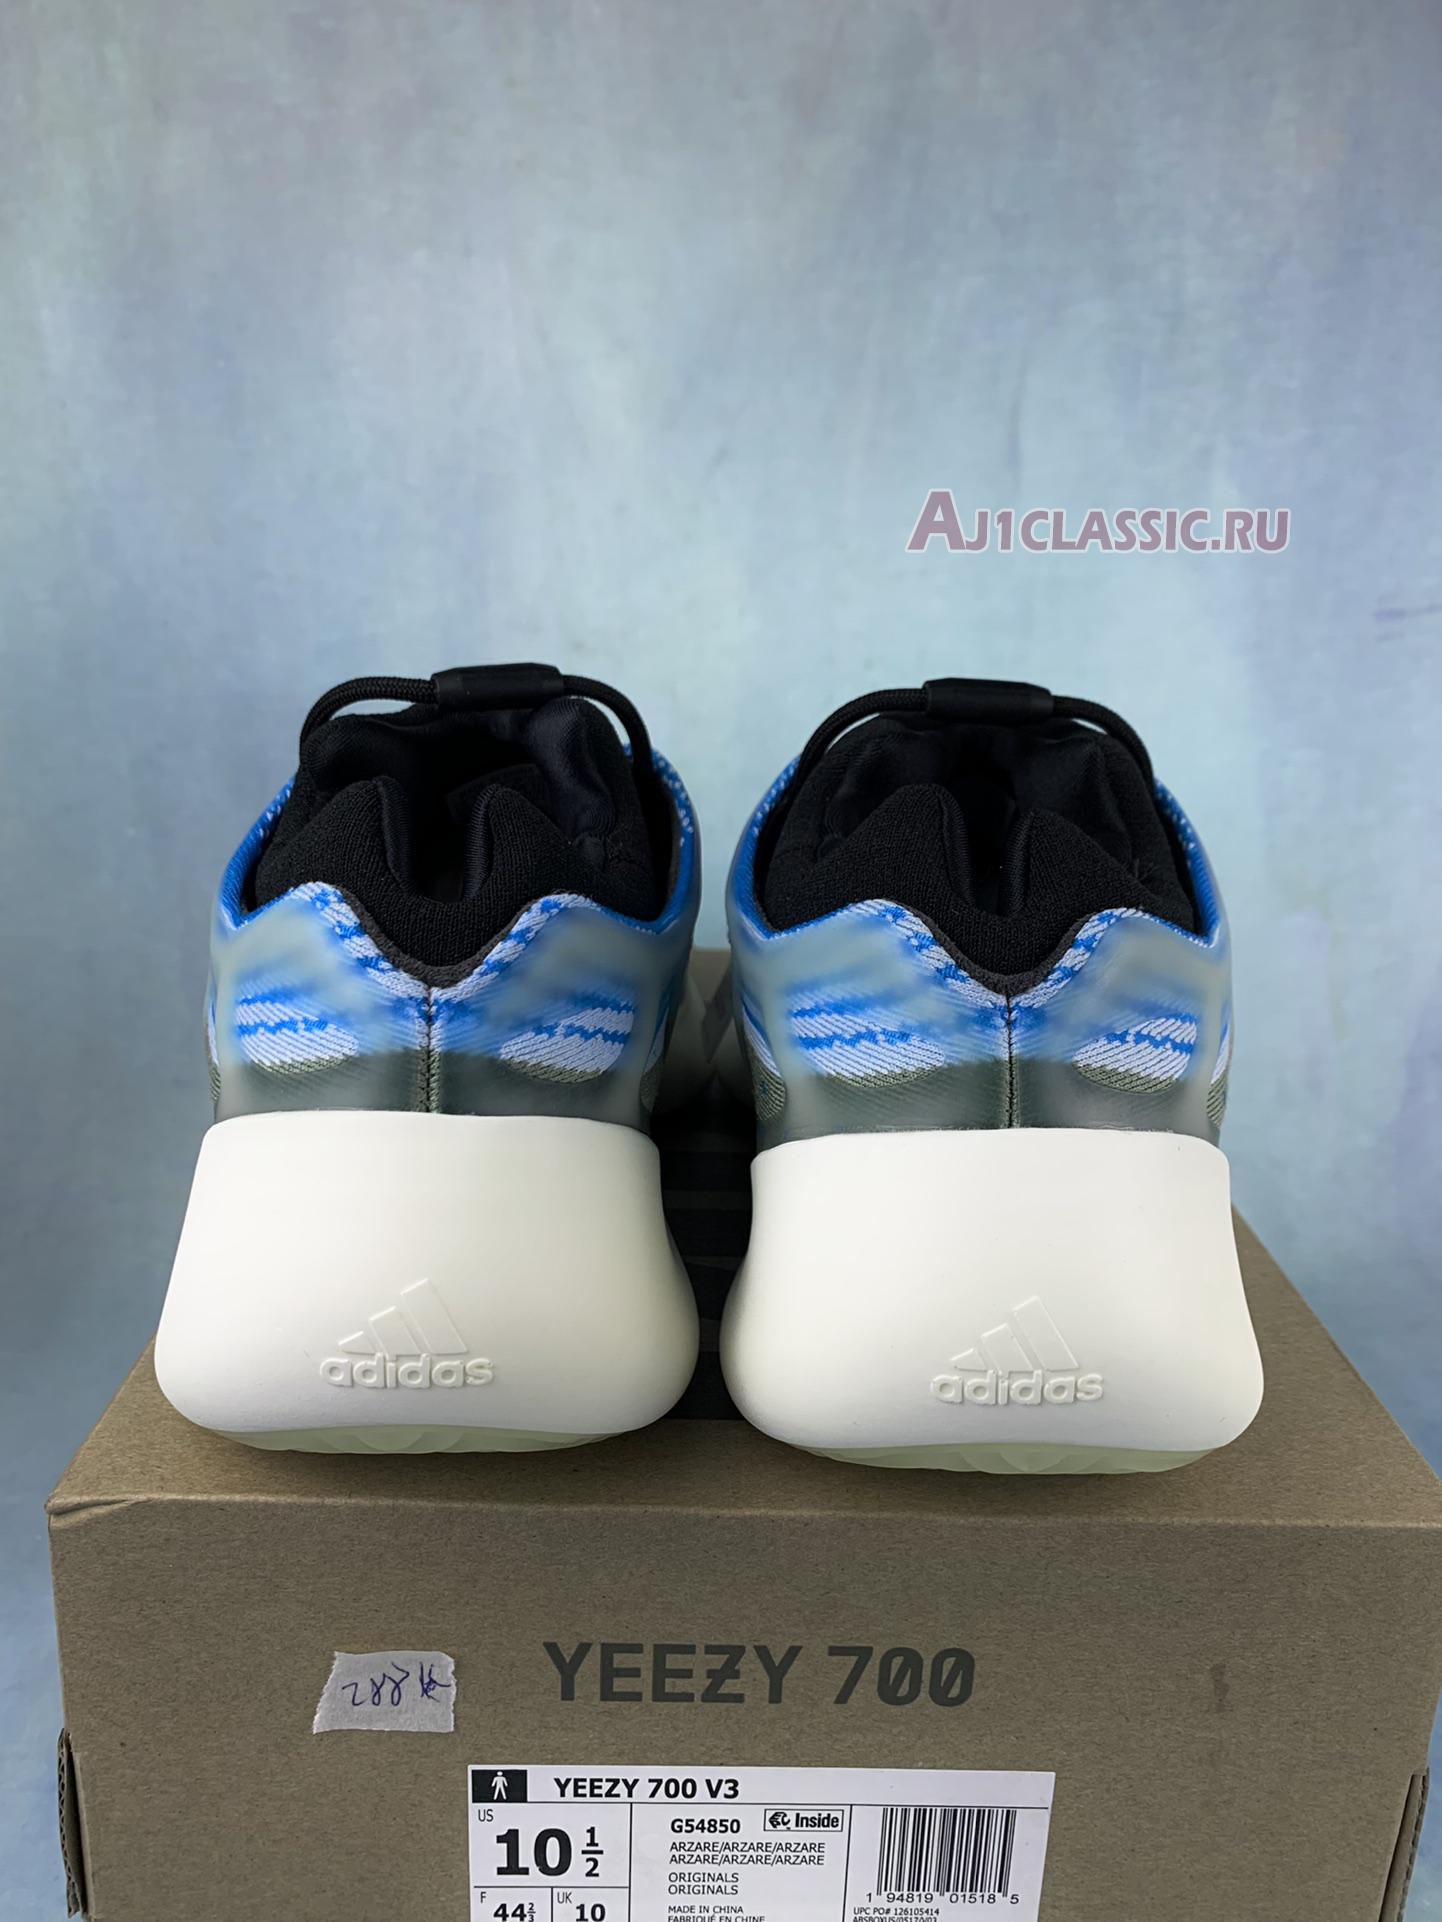 Adidas Yeezy 700 V3 "Arzareth" G54850-2